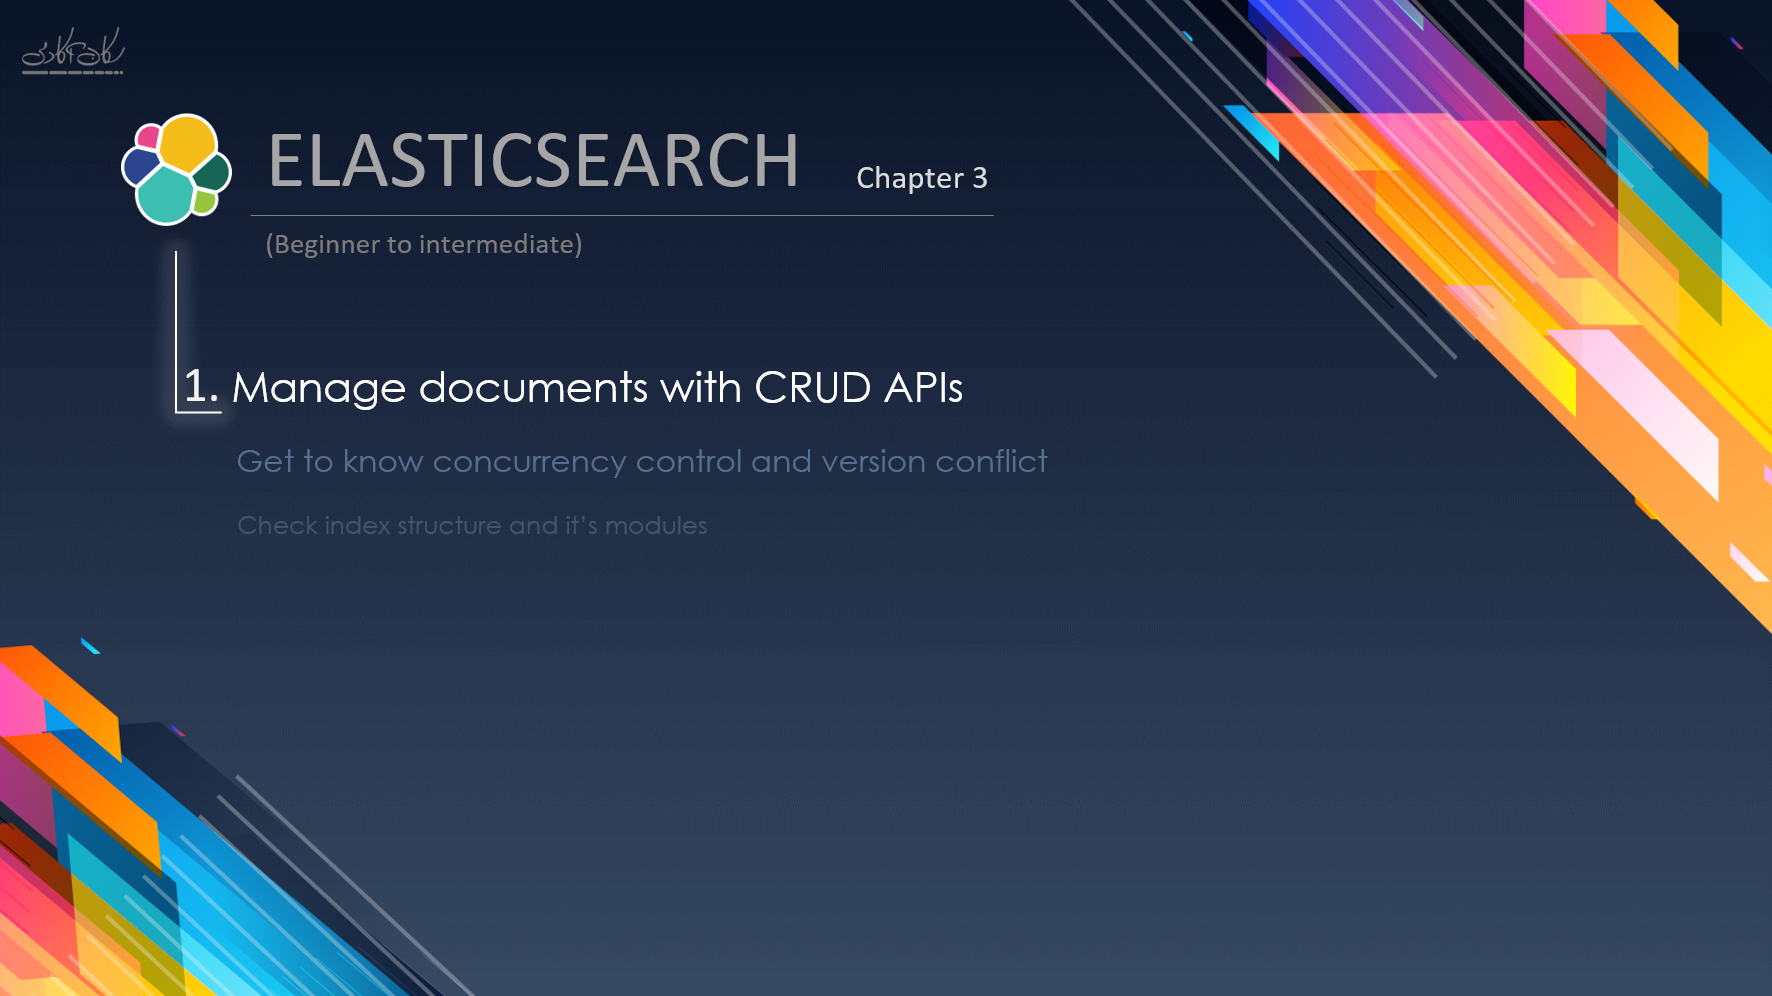 کار با API های CRUD و مدیریت document ها در Elasticsearch